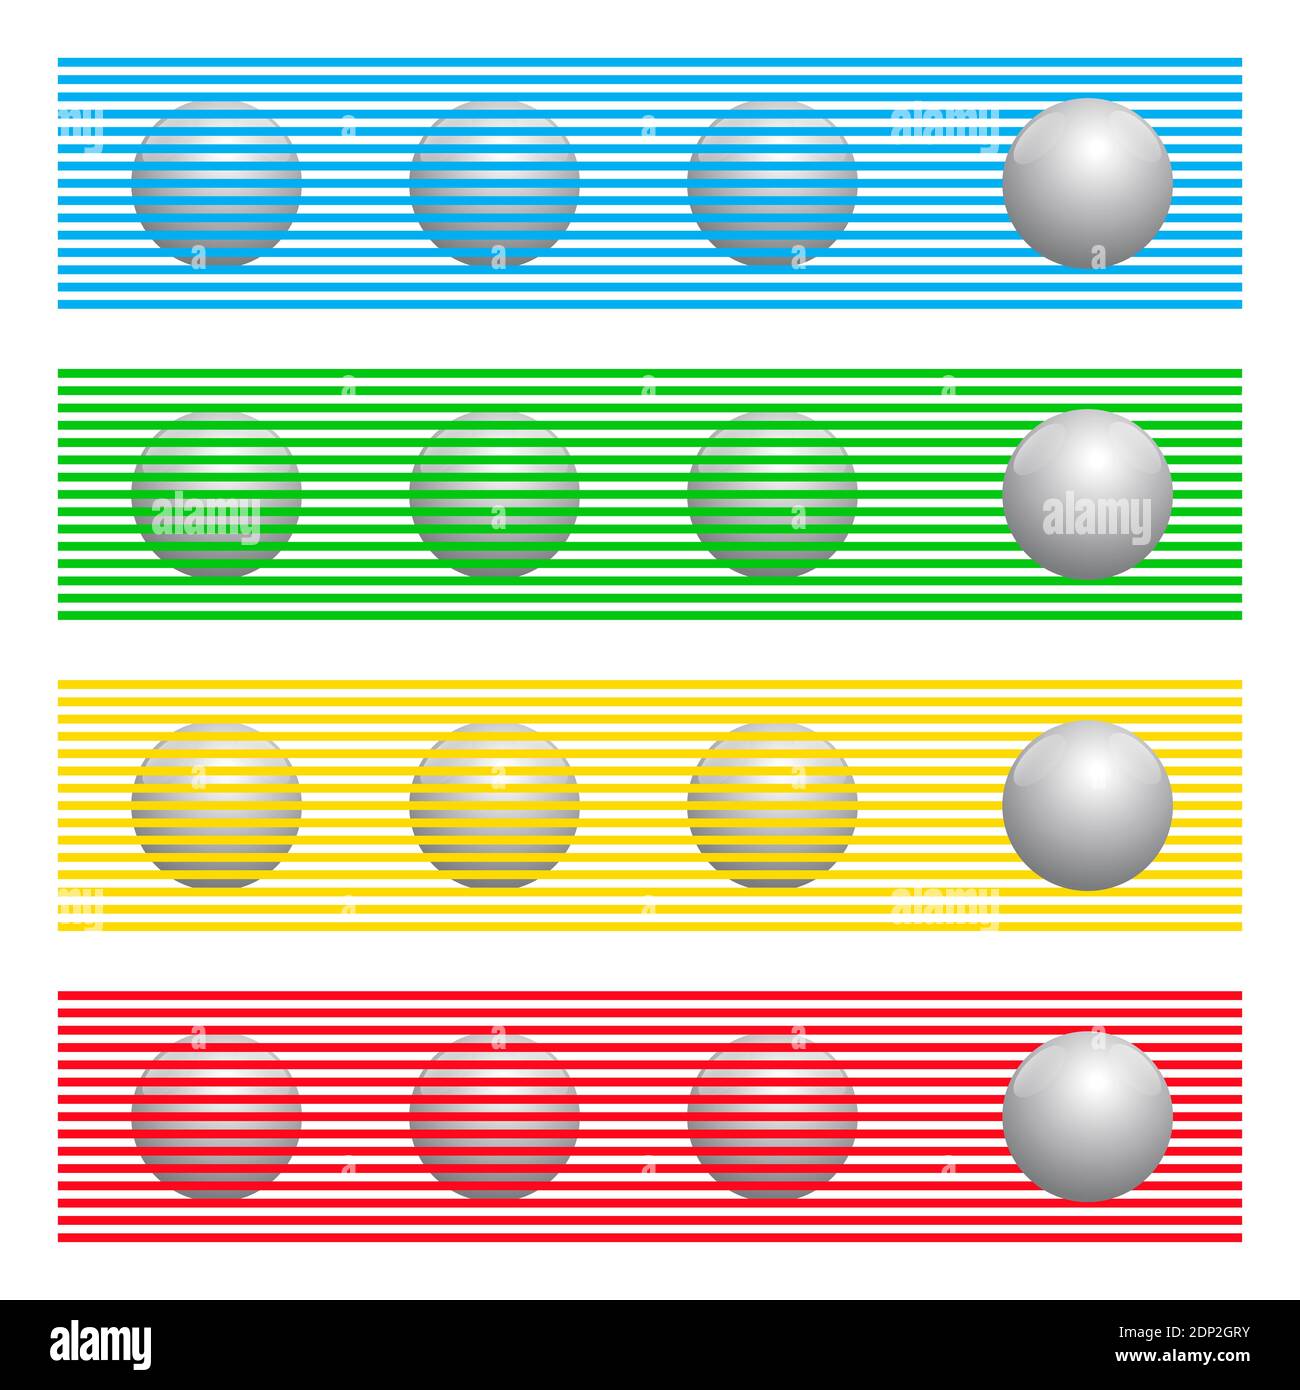 Le sfere con gli stessi colori dietro le linee colorate sembrano essere sfere di colori diversi, note come illusione Munker-White. Foto Stock